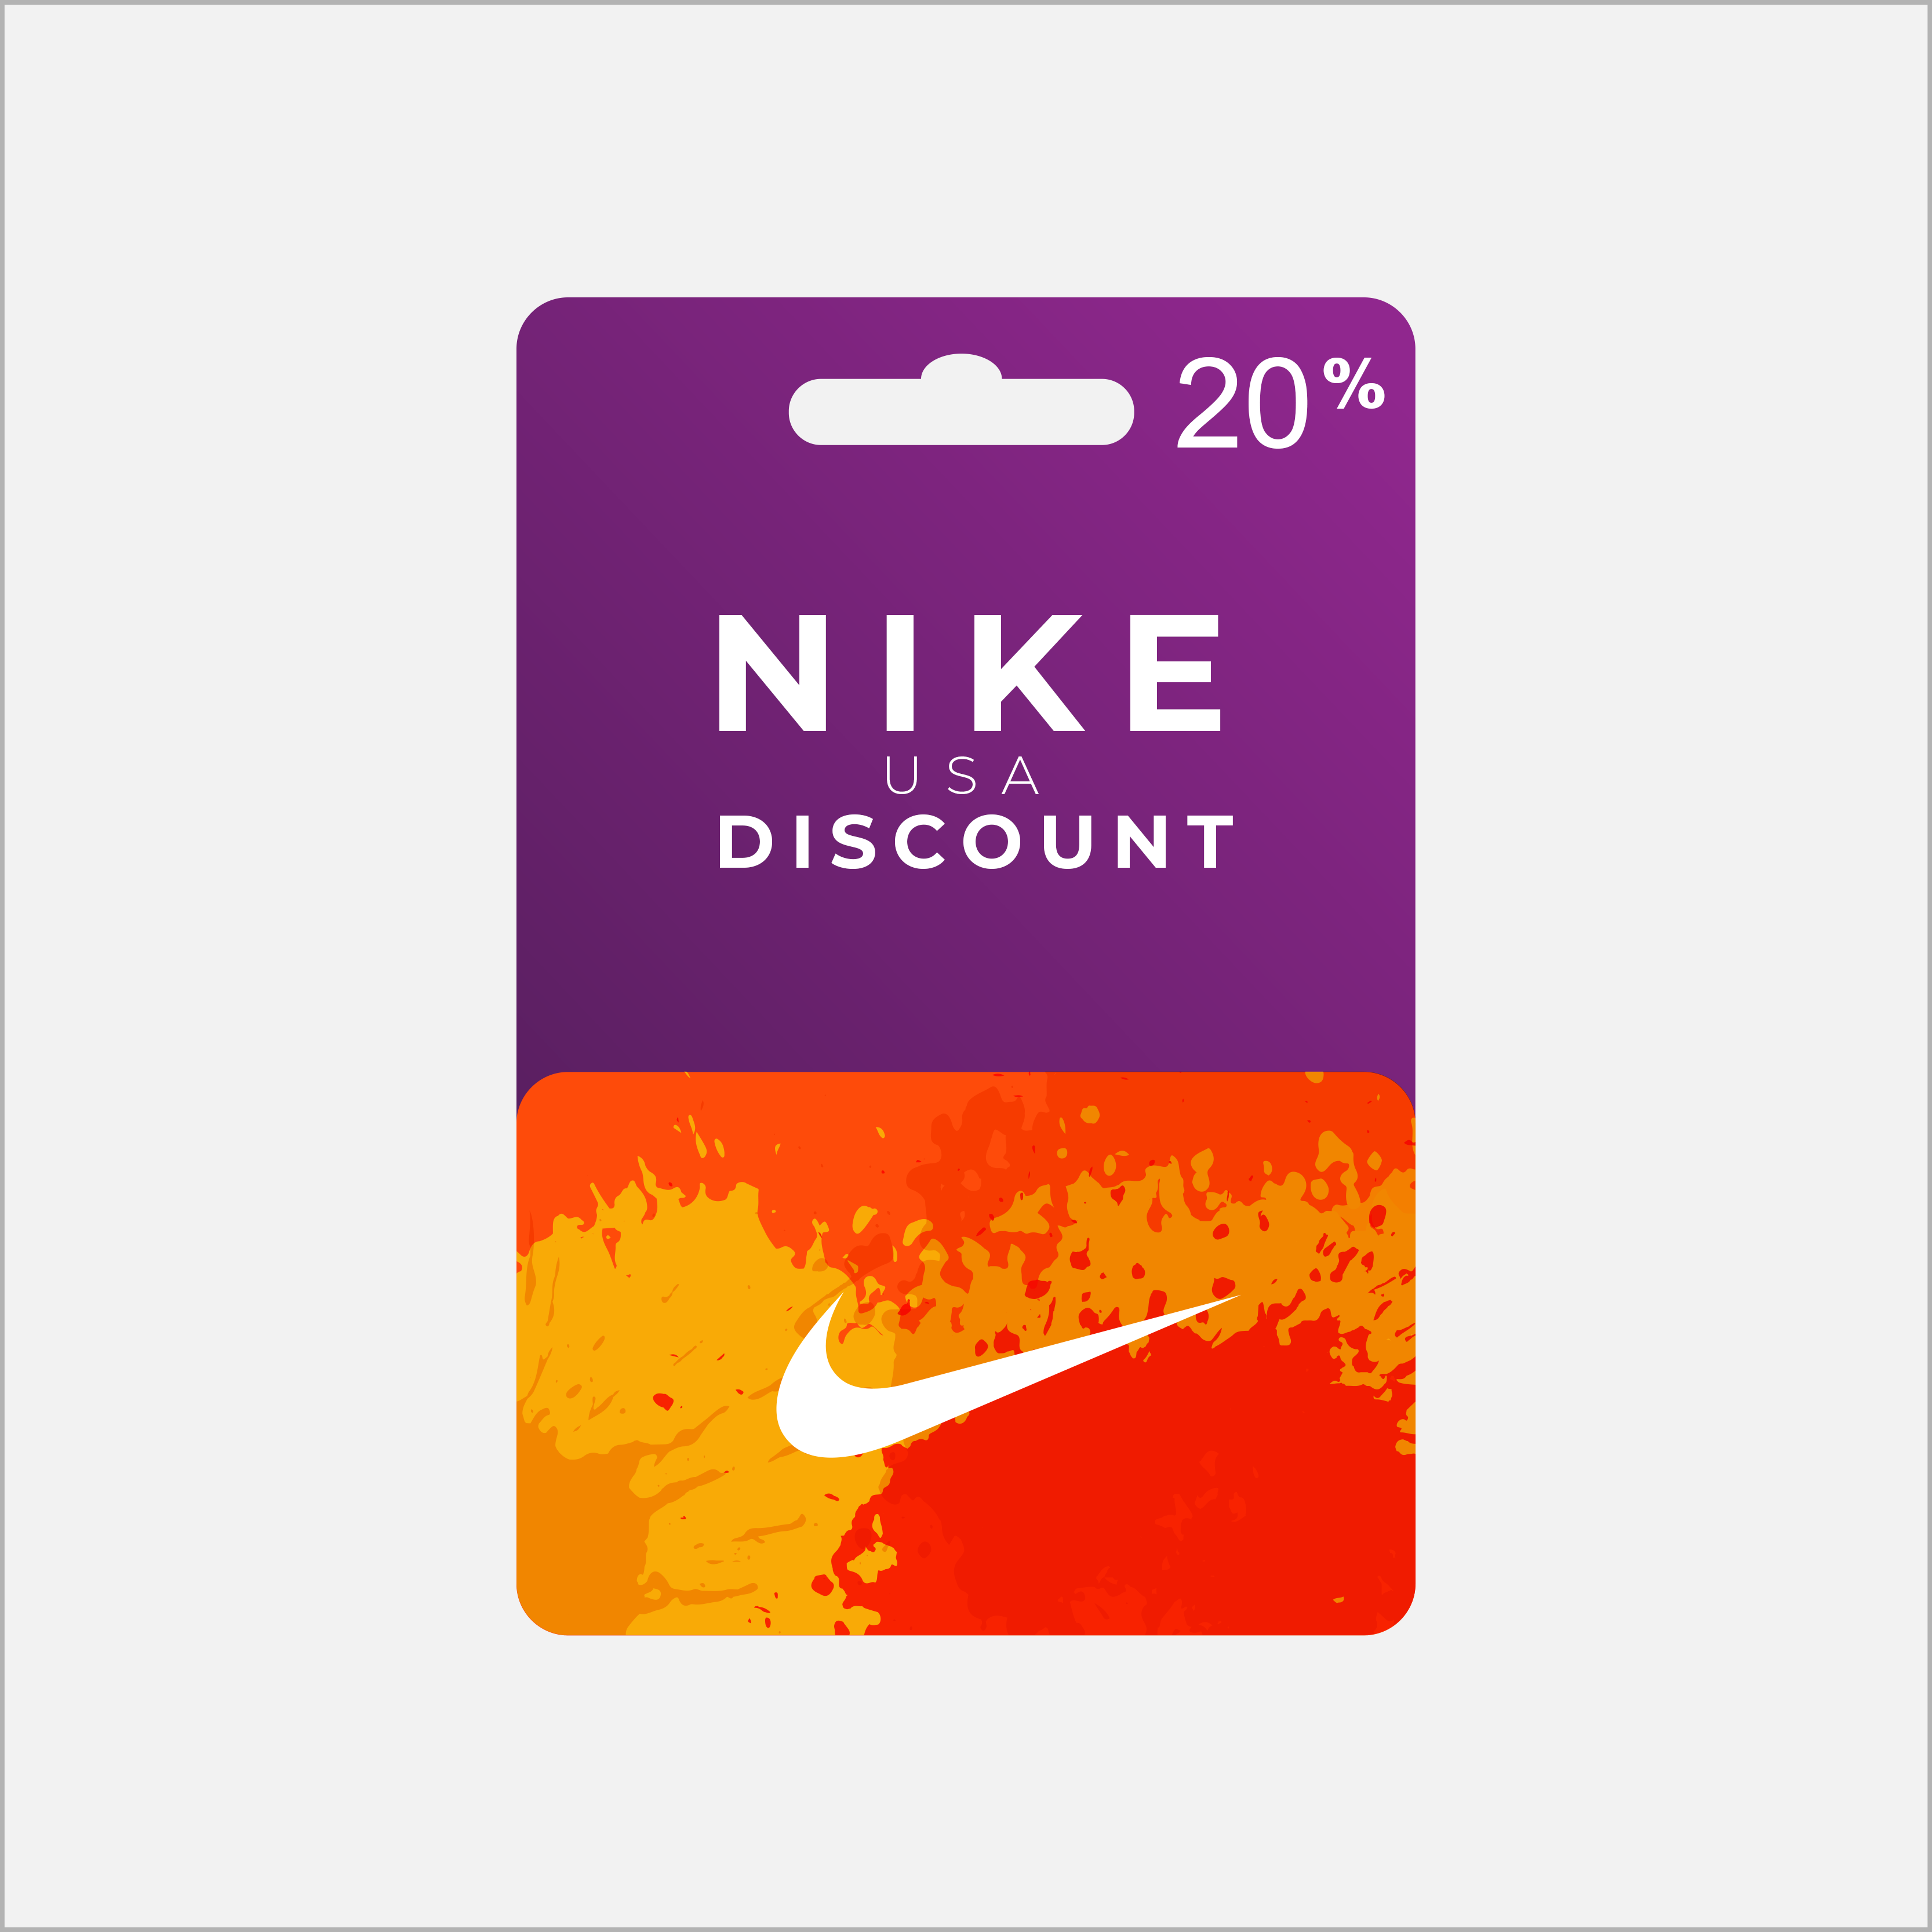 Nike USA promocode. Nike discount USA. Найк скидки. Код найк. Скидка найк